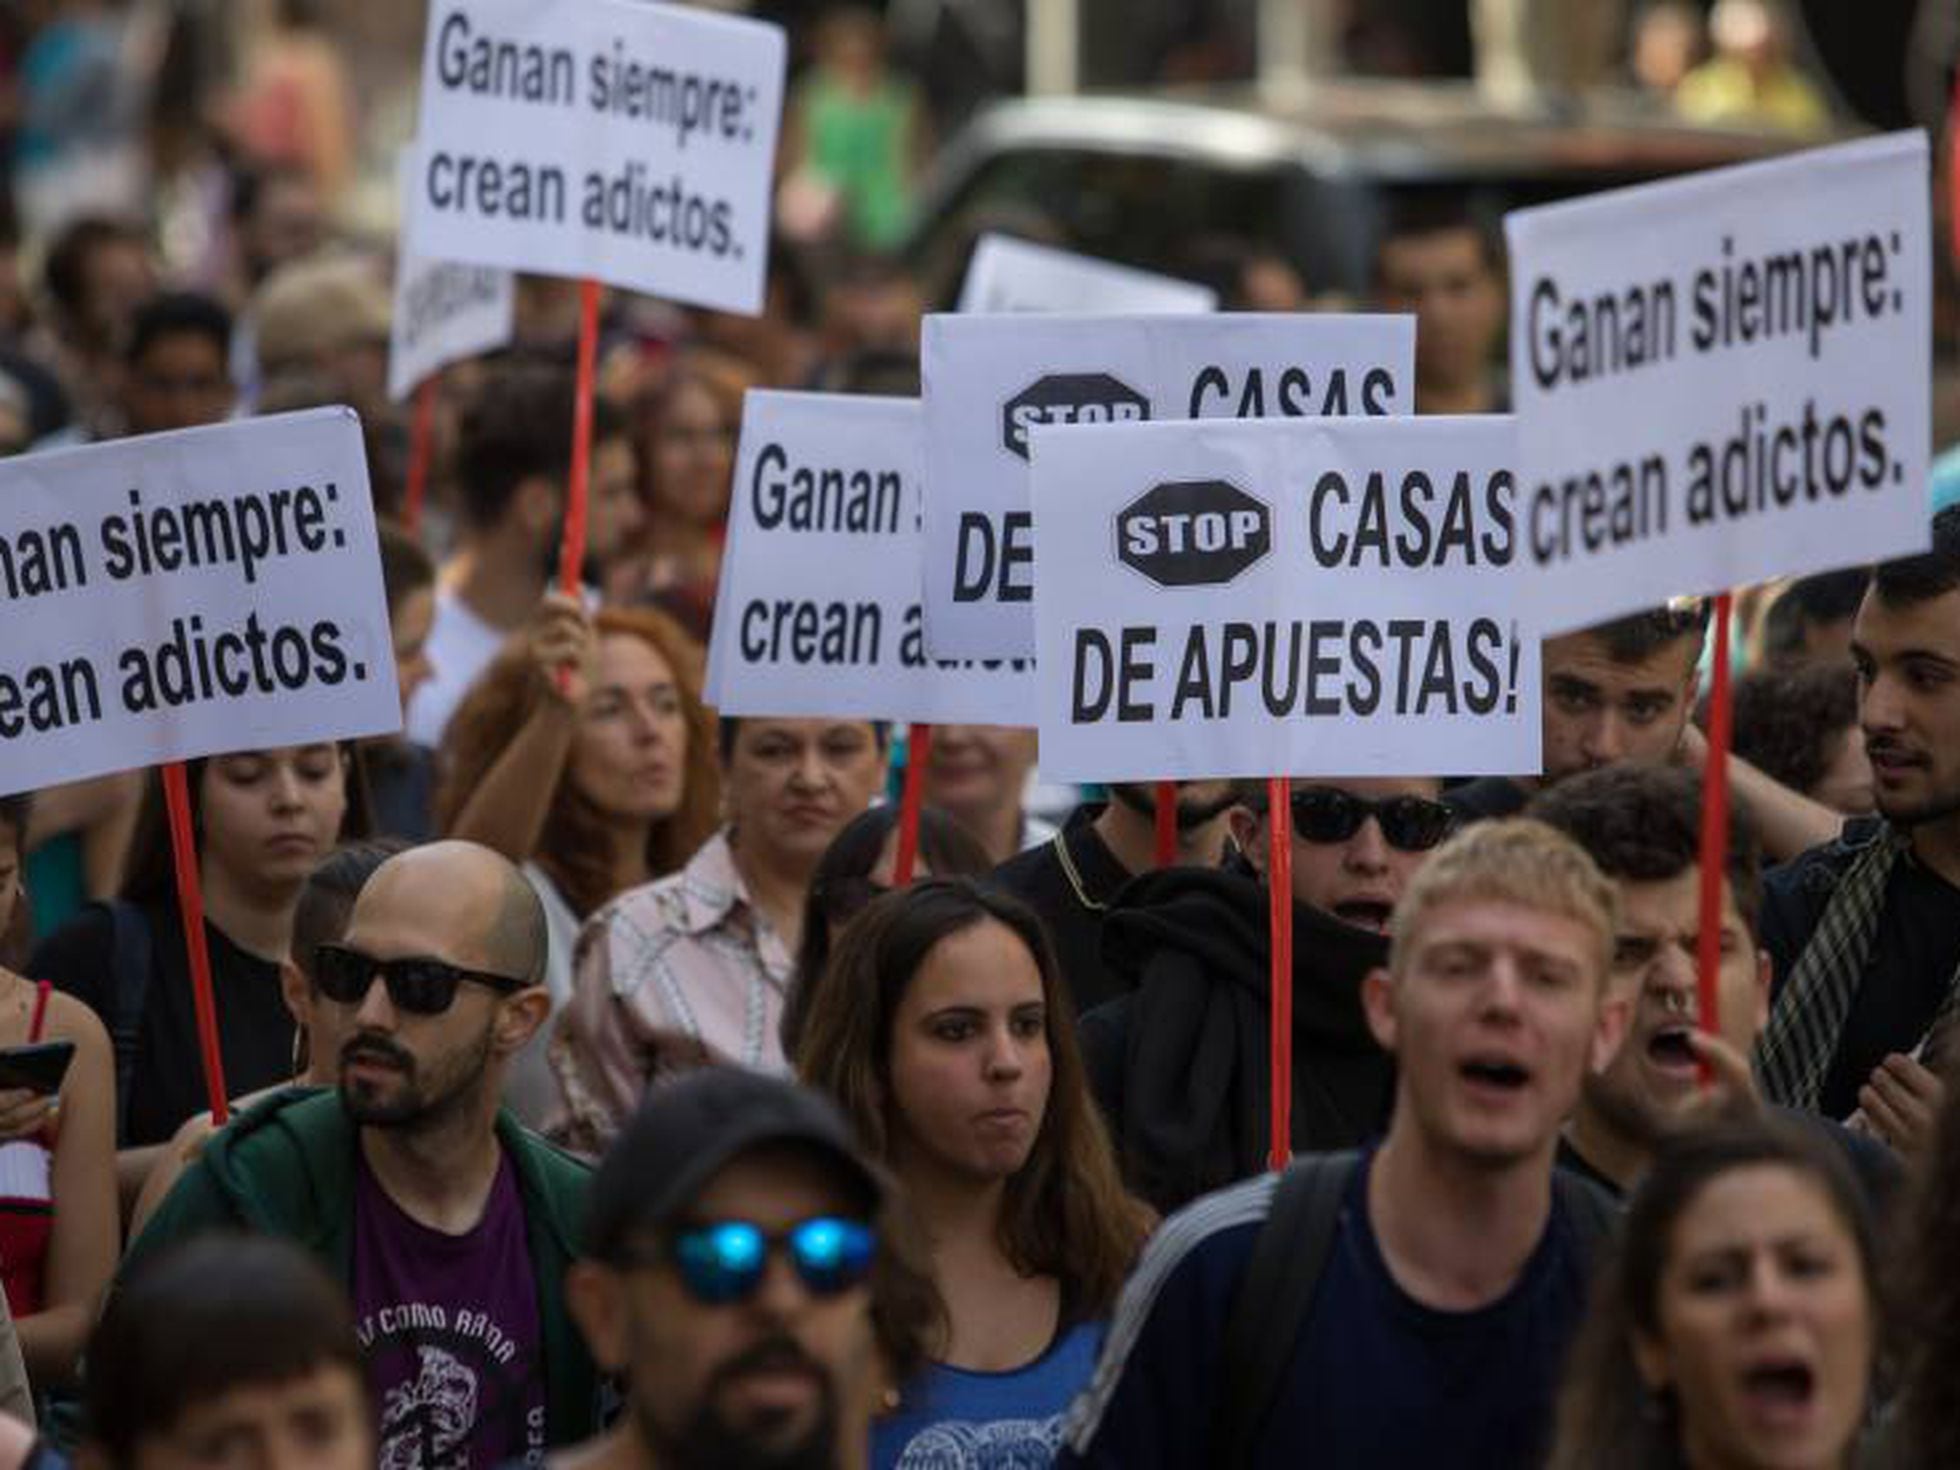 La mayor manifestación en Madrid contra las casas de apuestas pide echarlas  de los barrios | Madrid | EL PAÍS